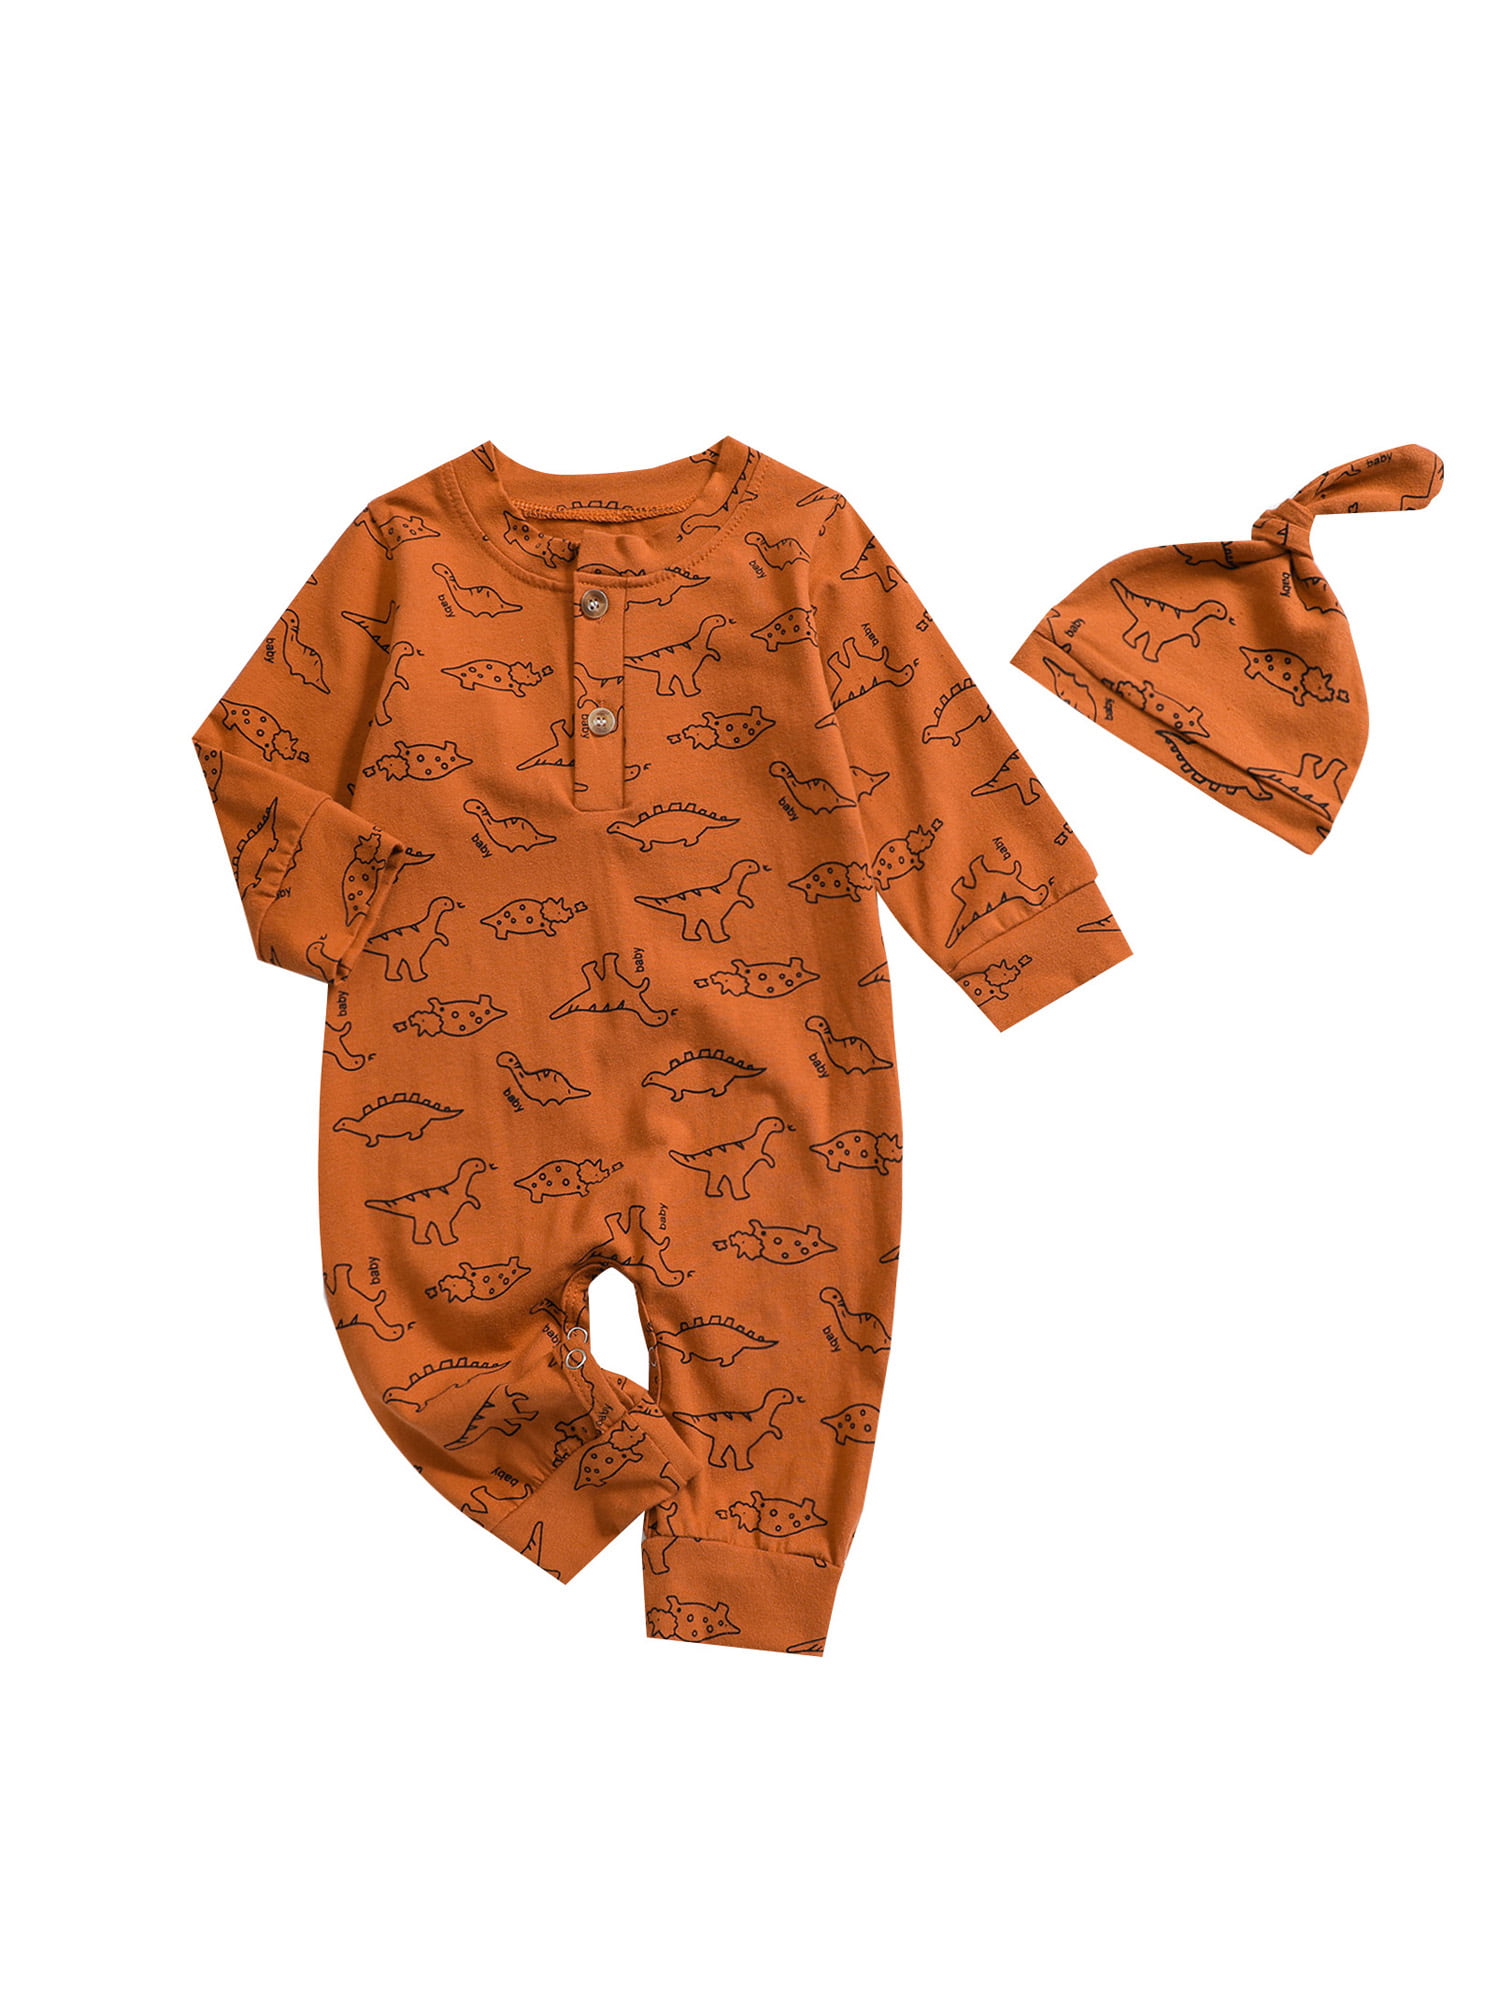 TheFound Newborn Unisex Baby Boy Girl Dinosaur Button Romper Long Sleeve  Bodysuit One Piece Jumpsuit with Hat - Walmart.com